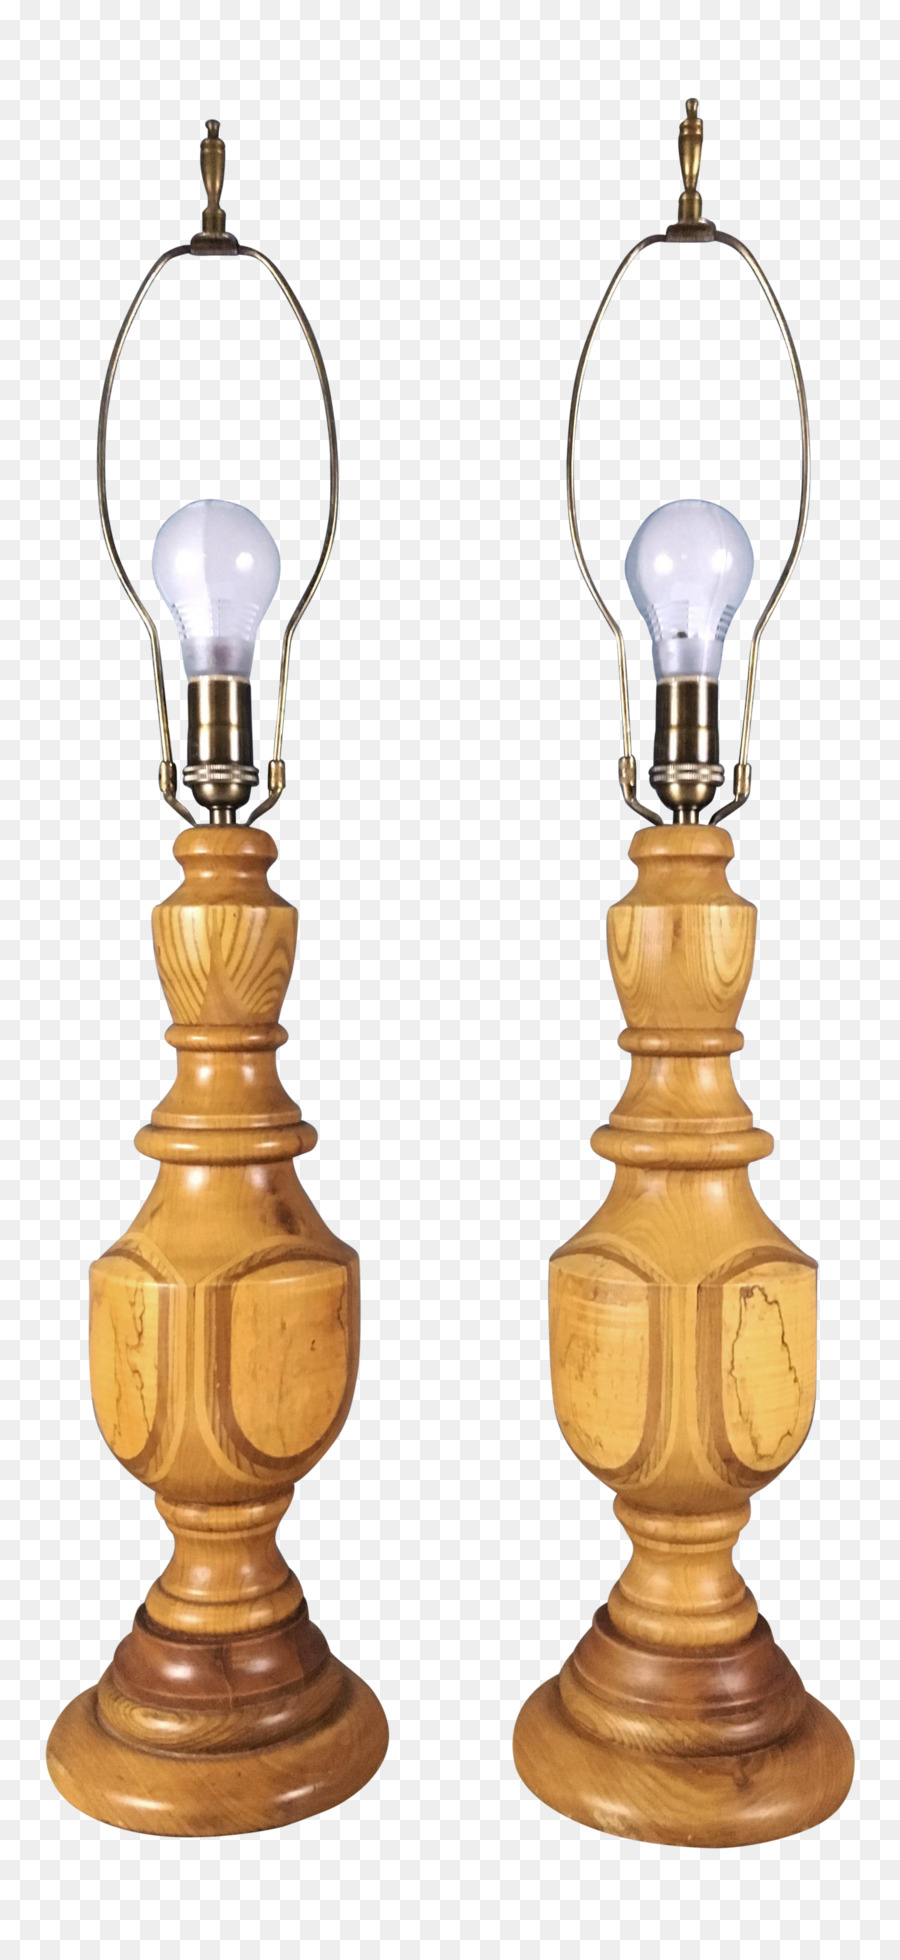 La lampada di design del Prodotto - 